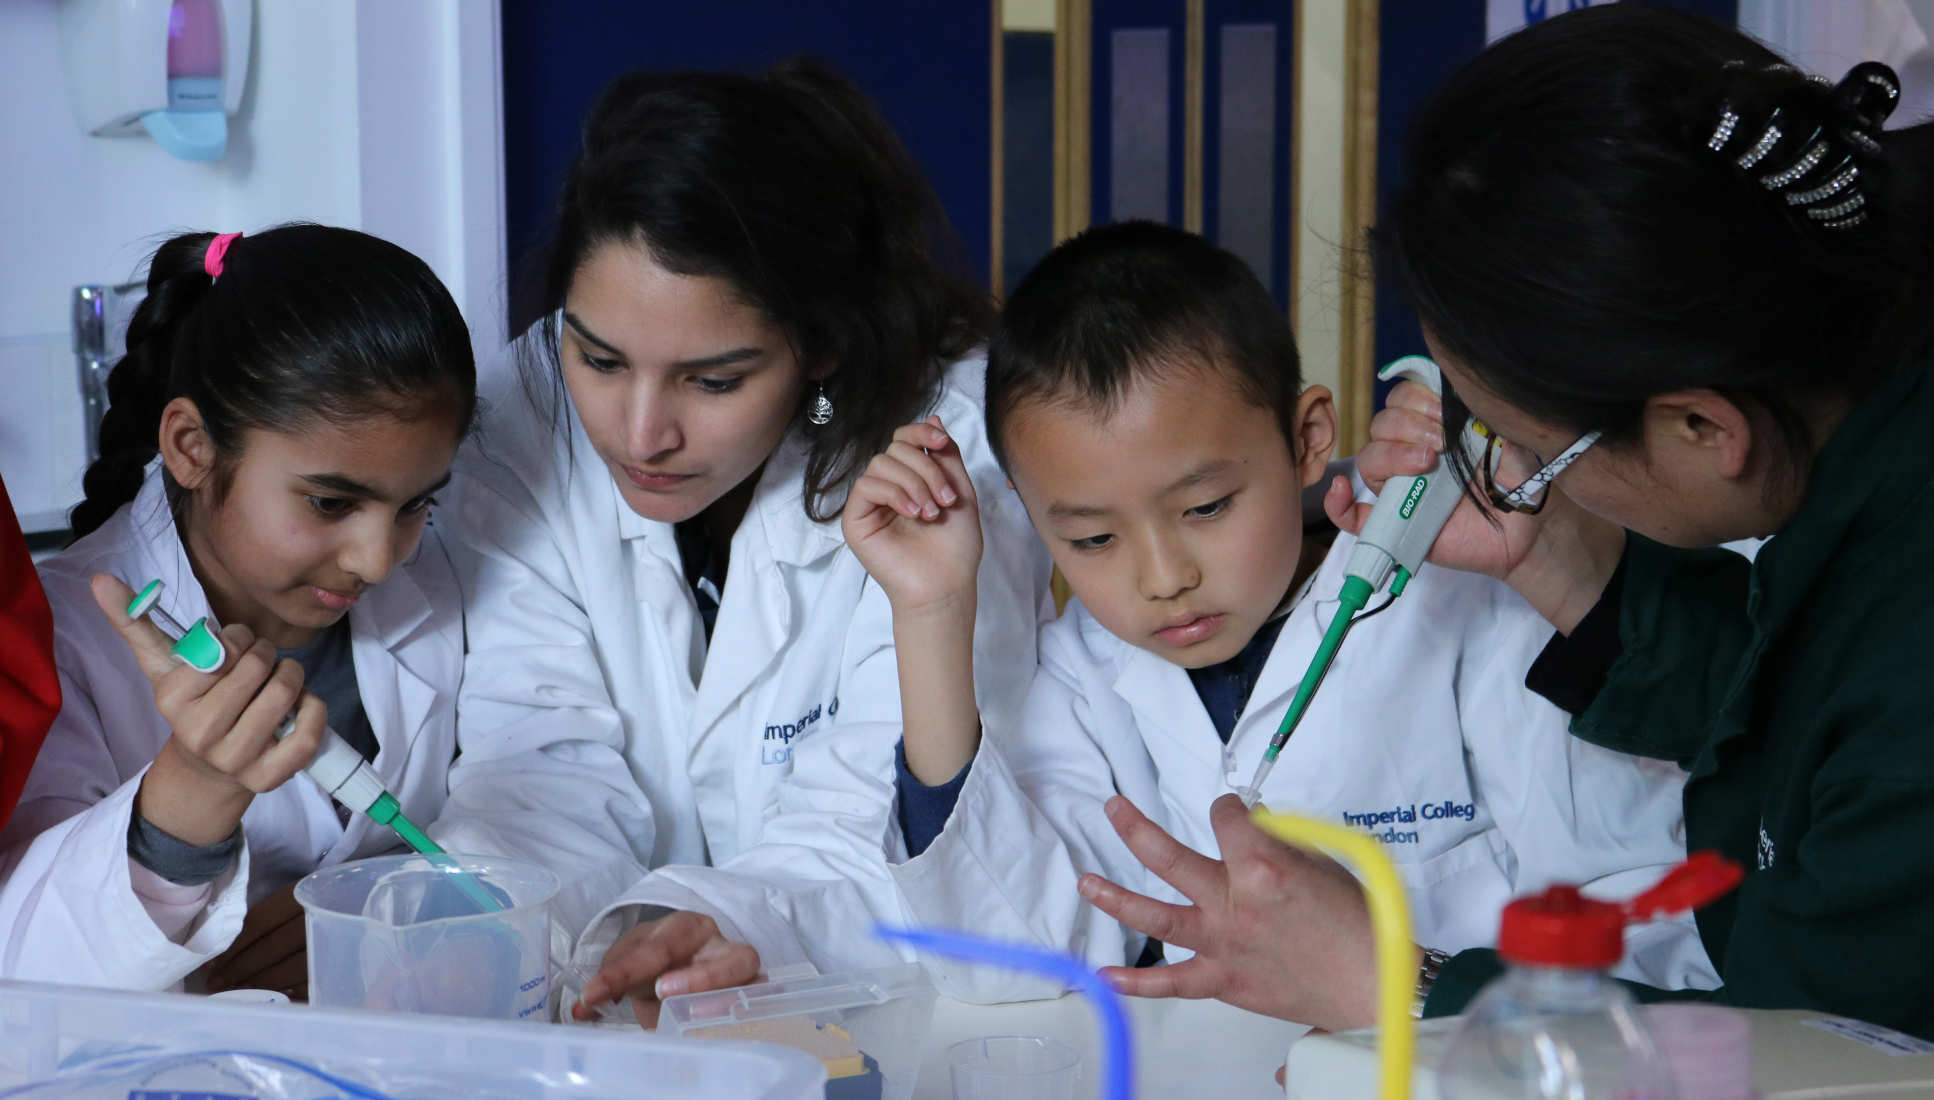 Children in lab